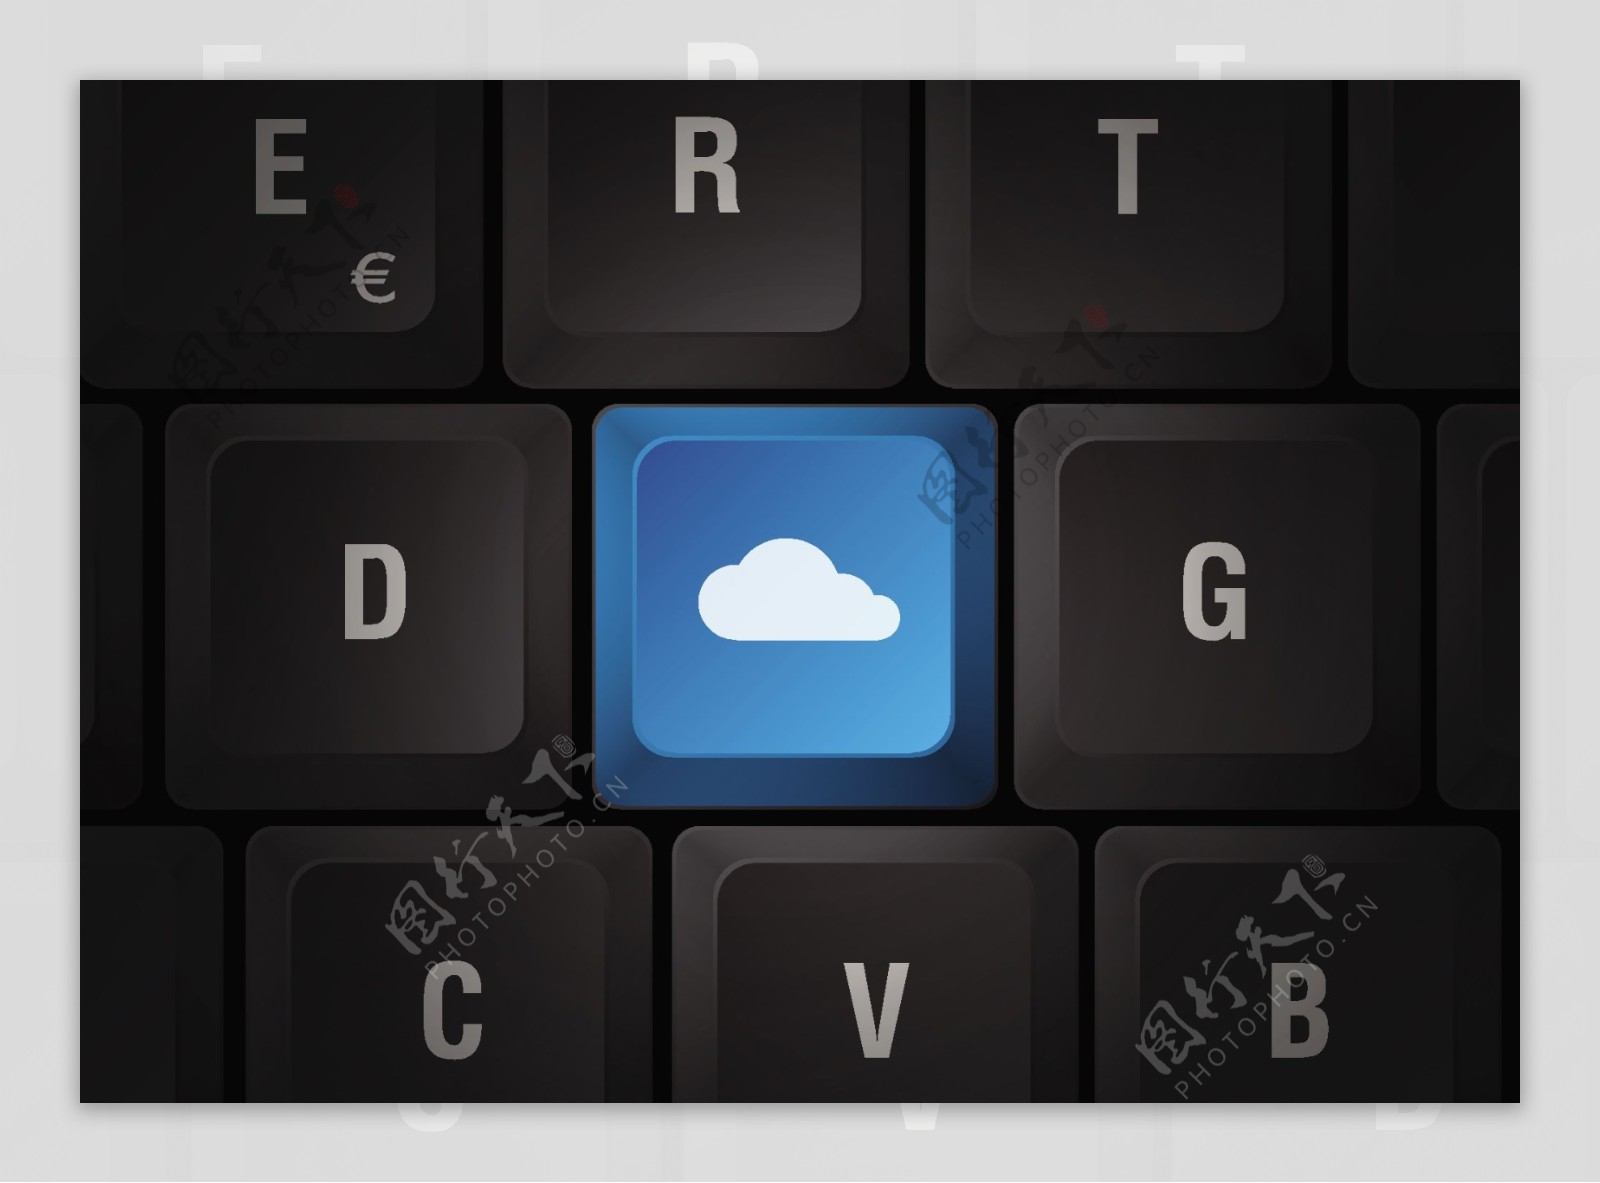 云服务键盘图片